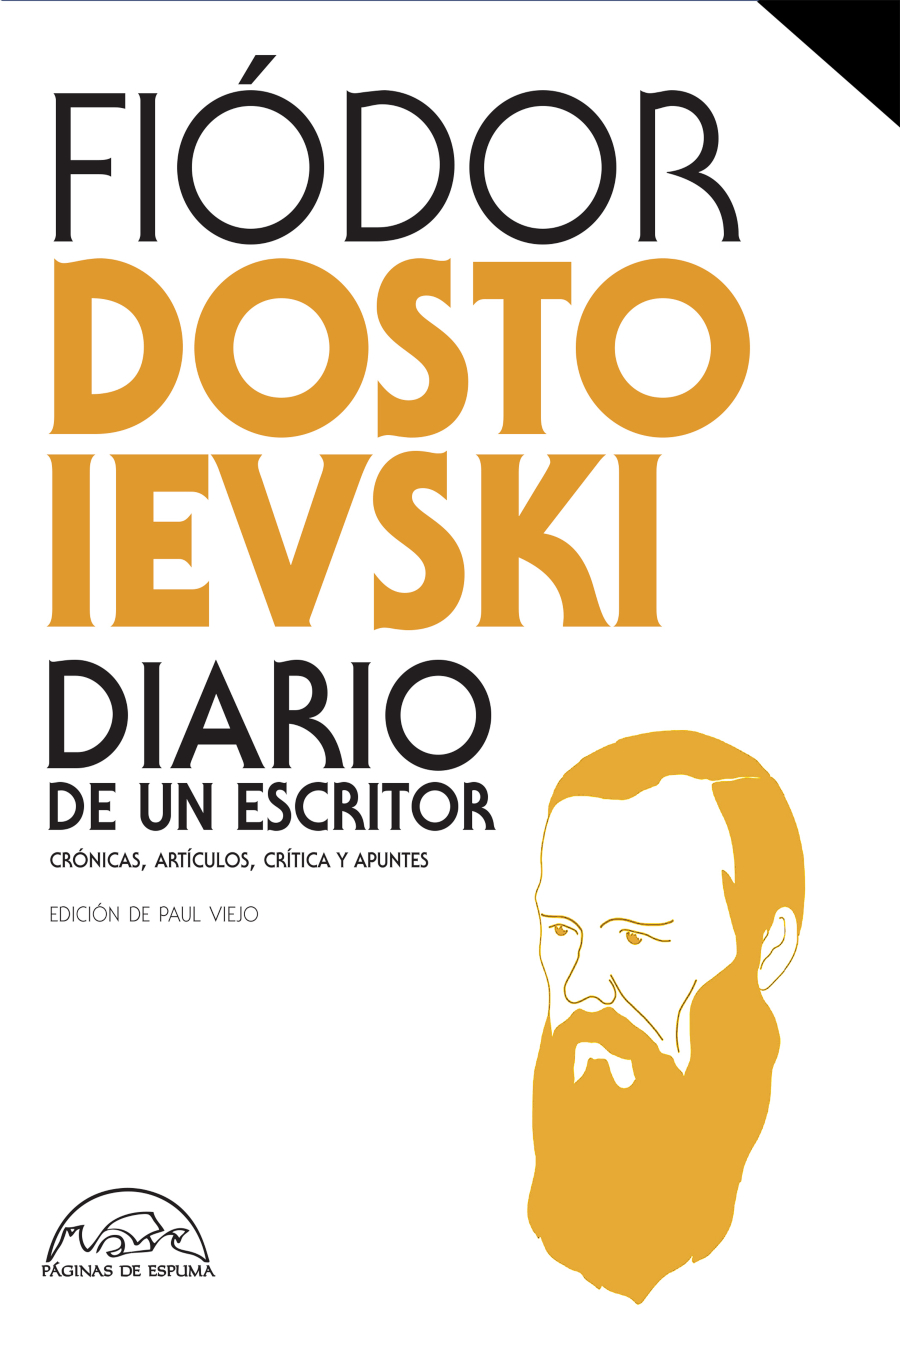 imagen 2 de Diario de un escritor y el legado periodístico de Fiódor Dostoievski.